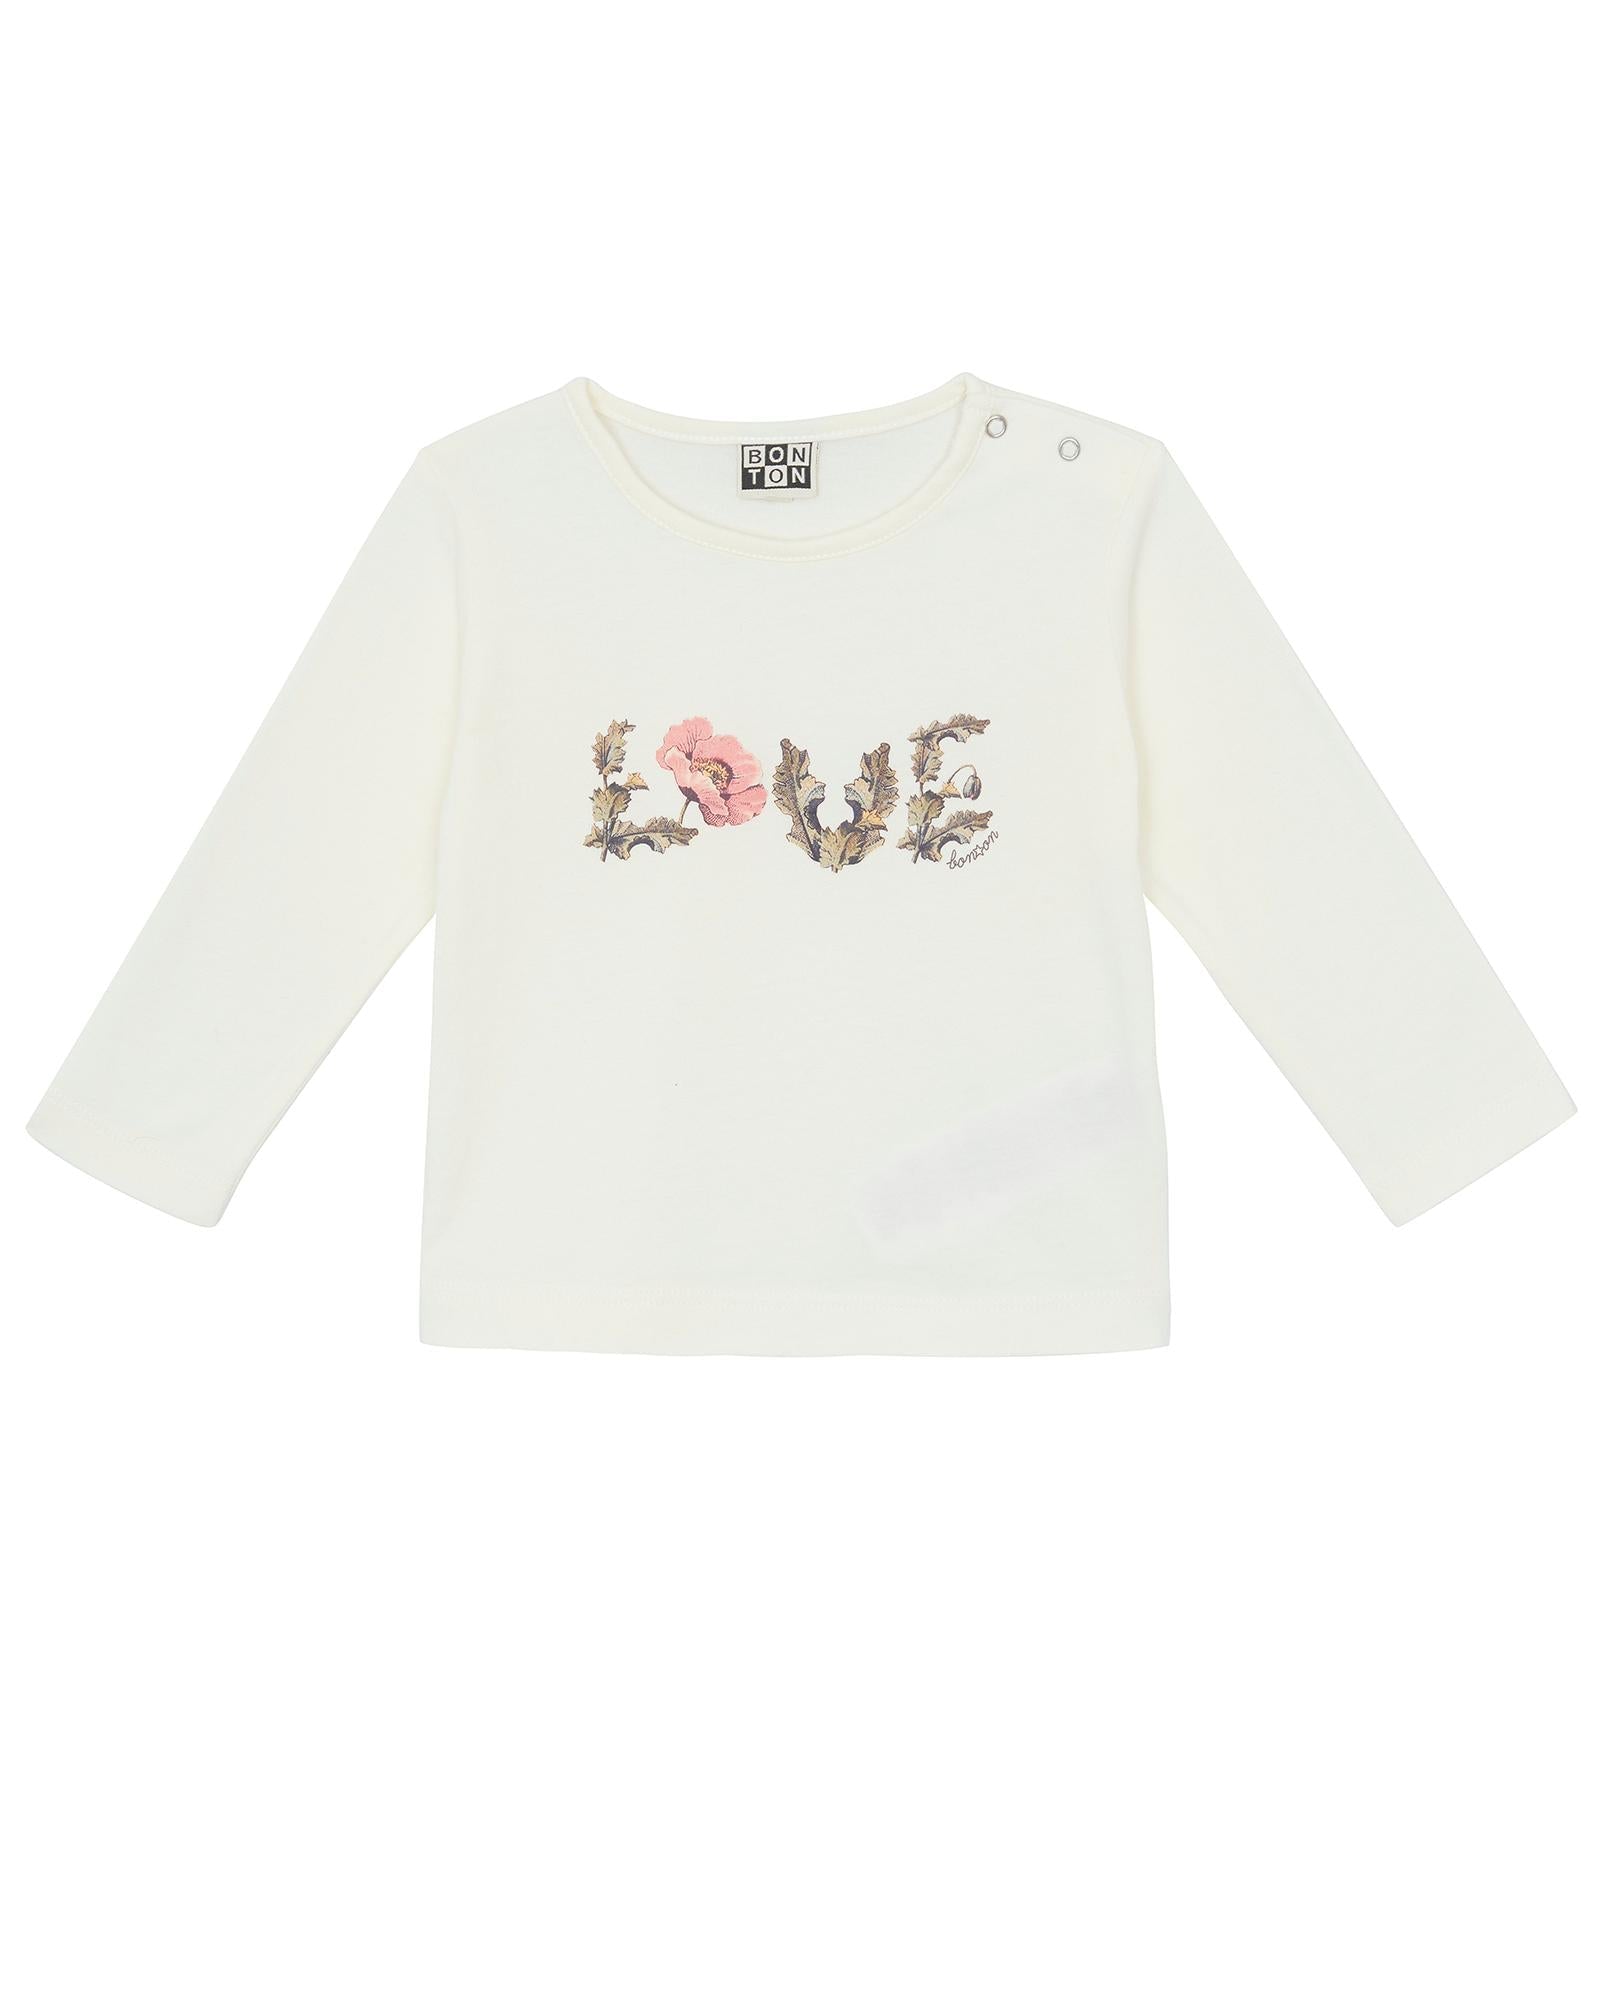 Tee-shirt Love beige Bébé ML 100% coton biologique